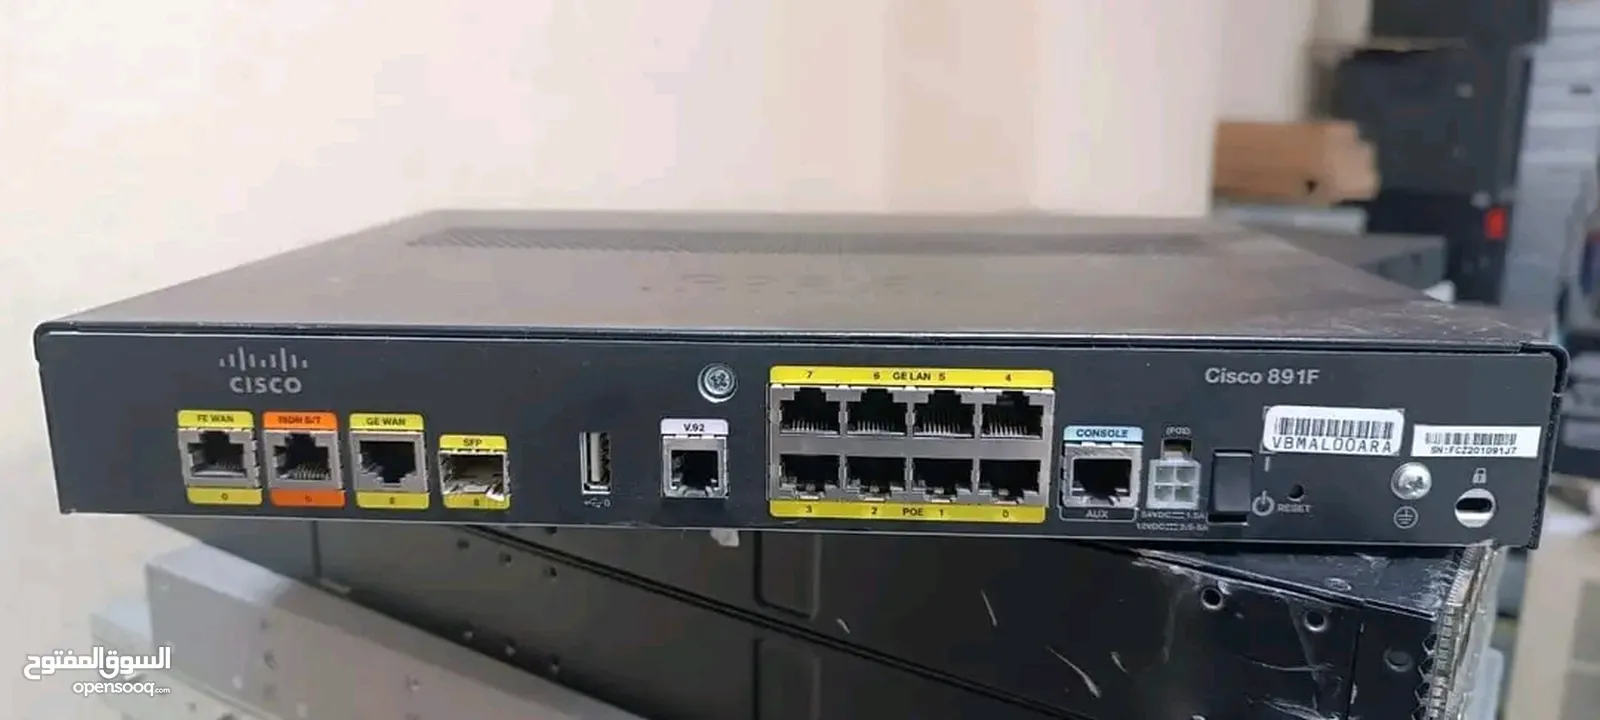 Router Cisco 891f